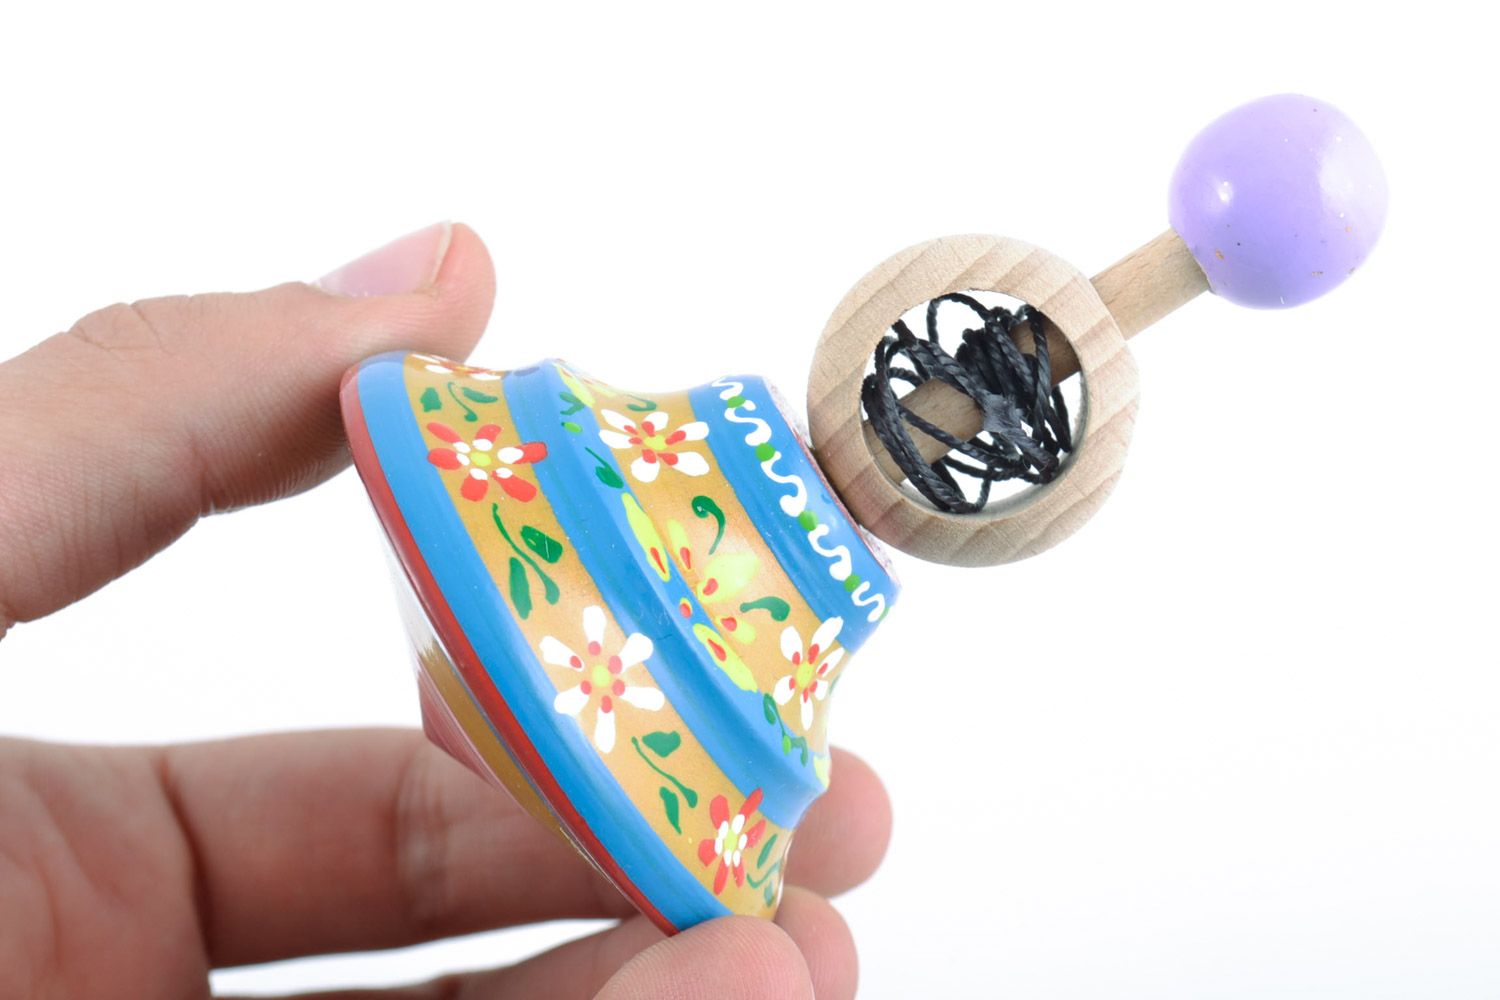 Деревянный волчок ручной работы игрушка для детей расписанный эко-красками  фото 3